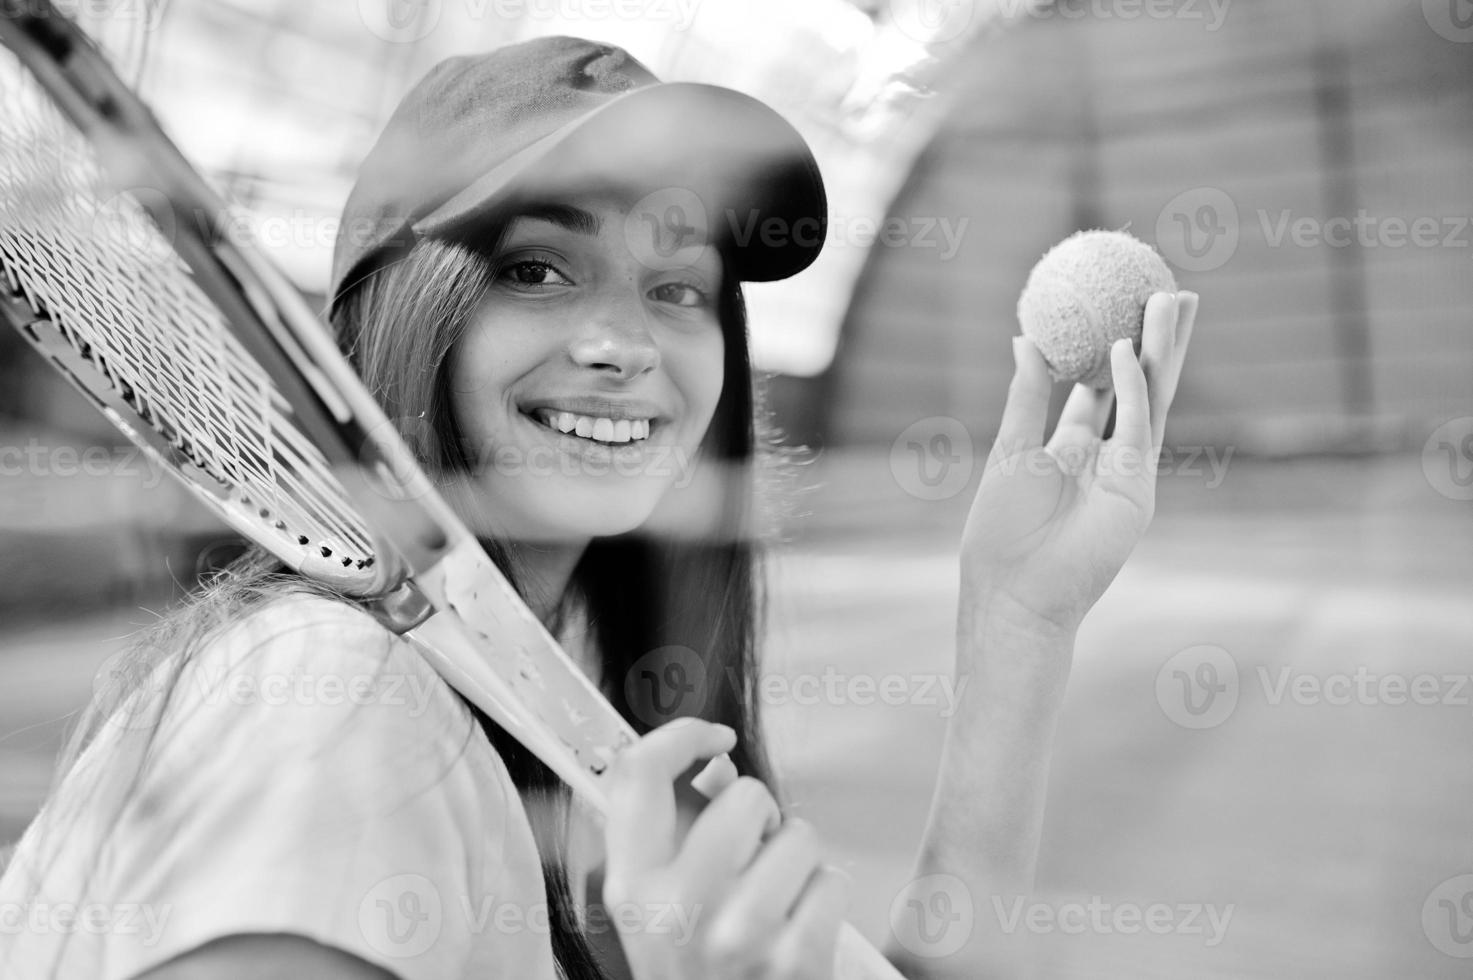 jeune joueuse sportive avec une raquette de tennis sur un court de tennis. photo